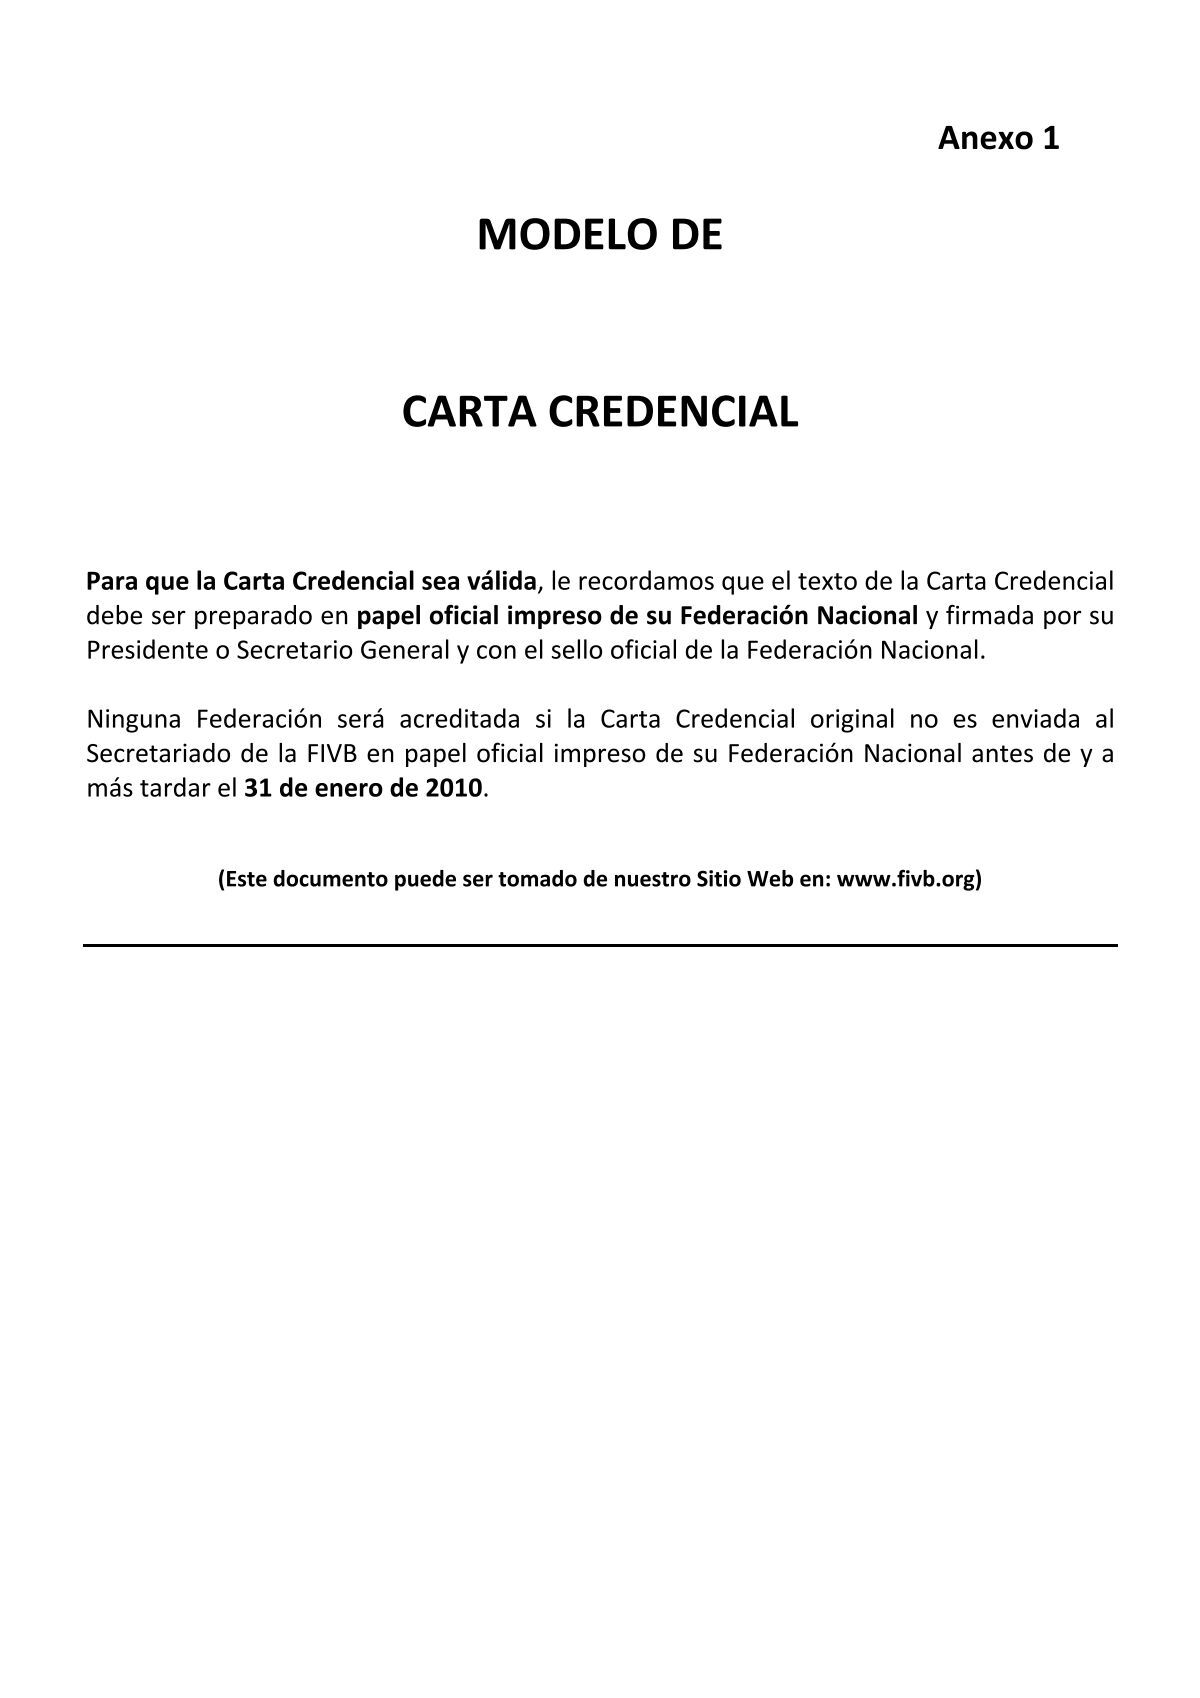 MODELO DE CARTA CREDENCIAL - FIVB